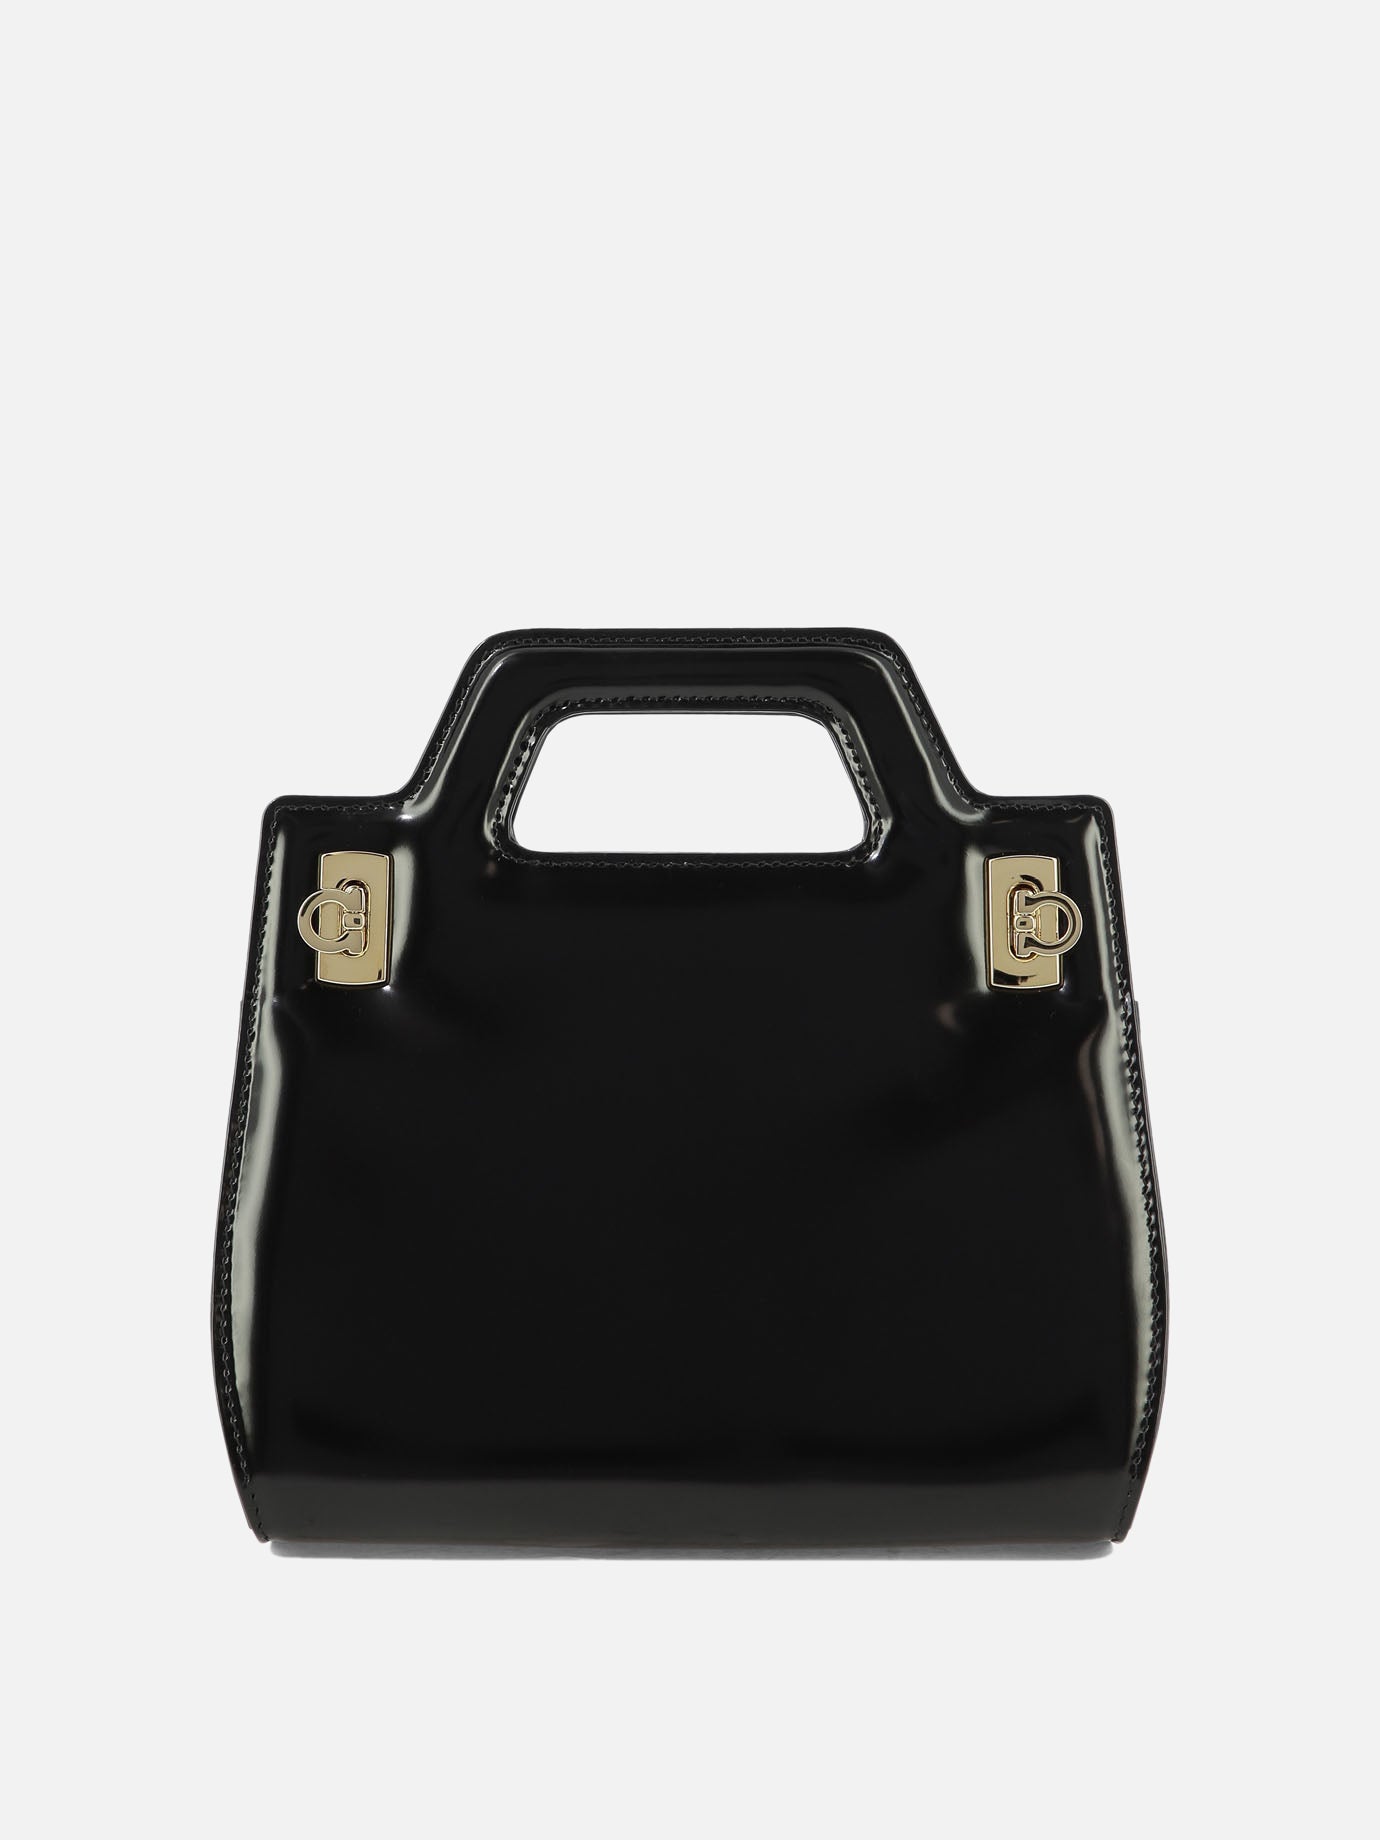 "Wanda Mini" handbag